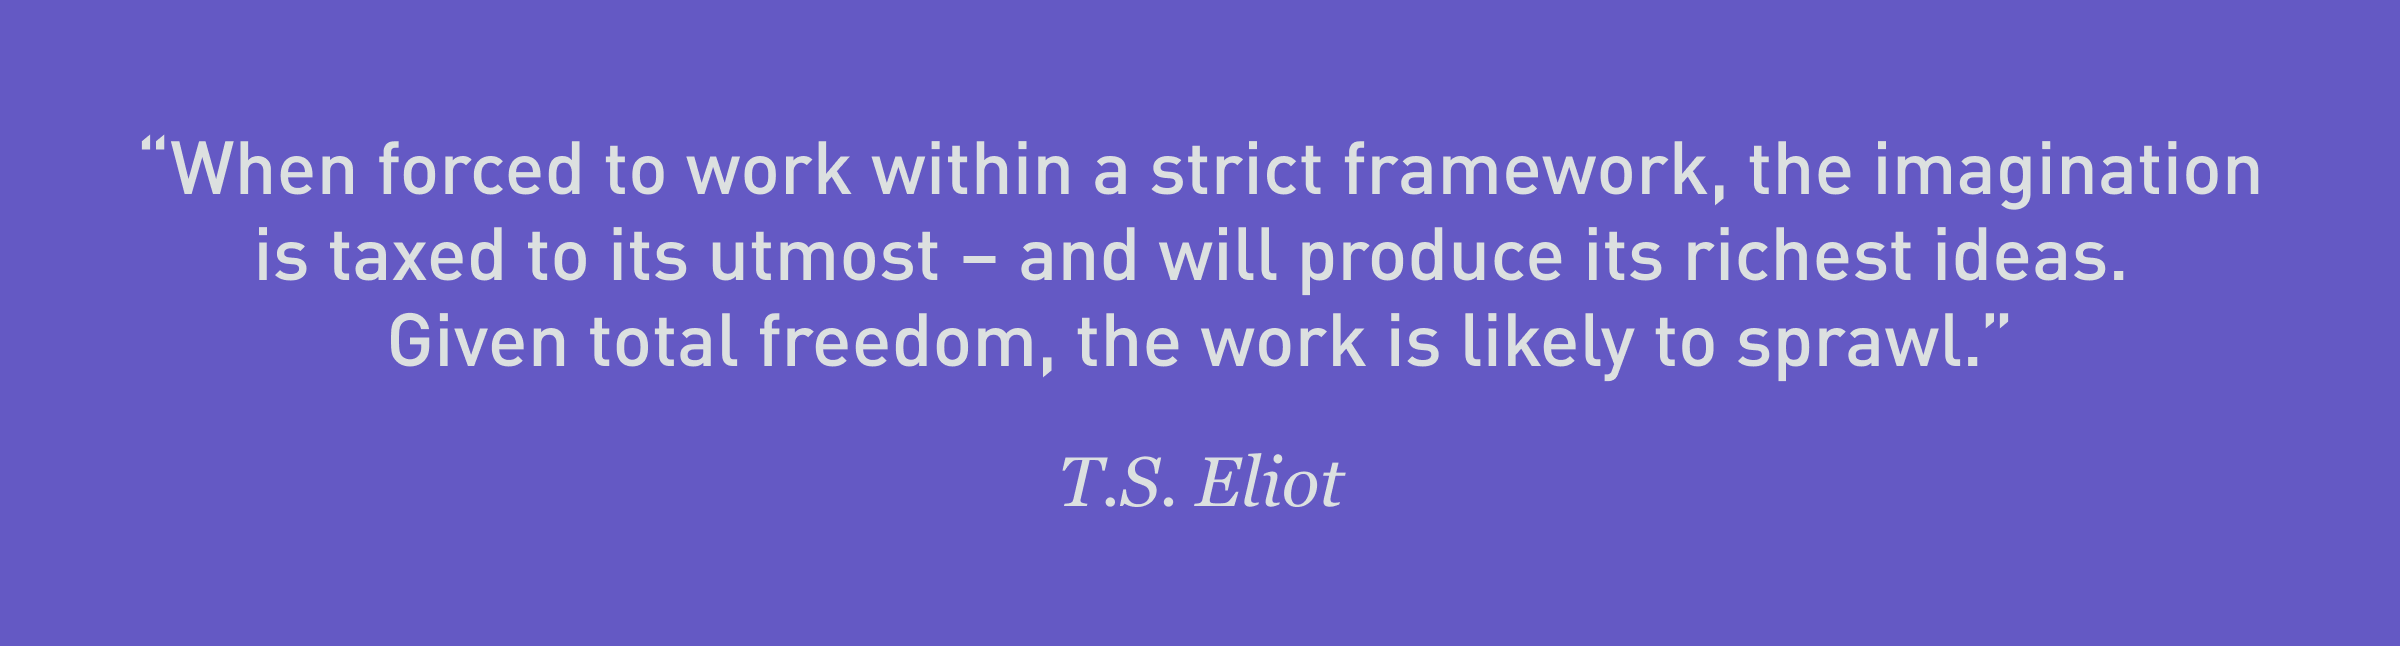 3050 - T.S. Eliot 